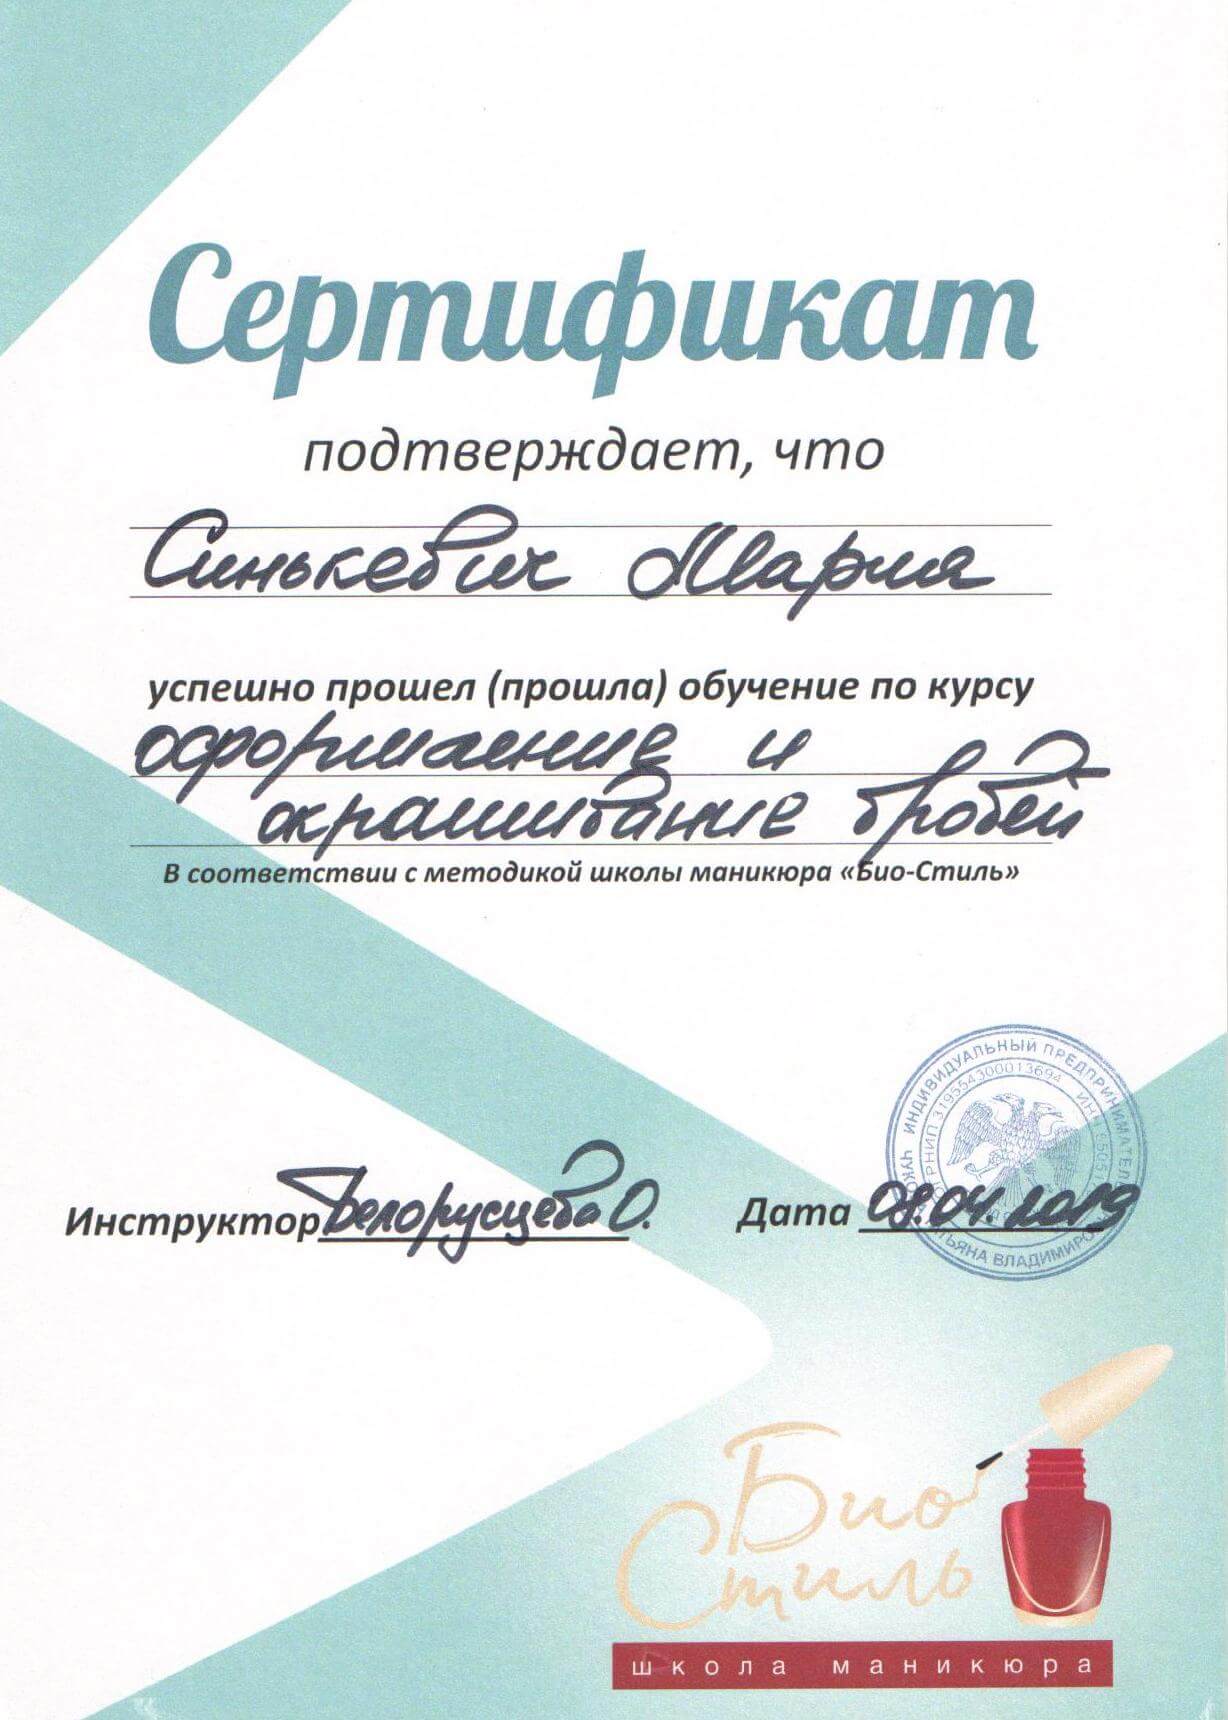 Сертификат - оформление и окрашивание бровей